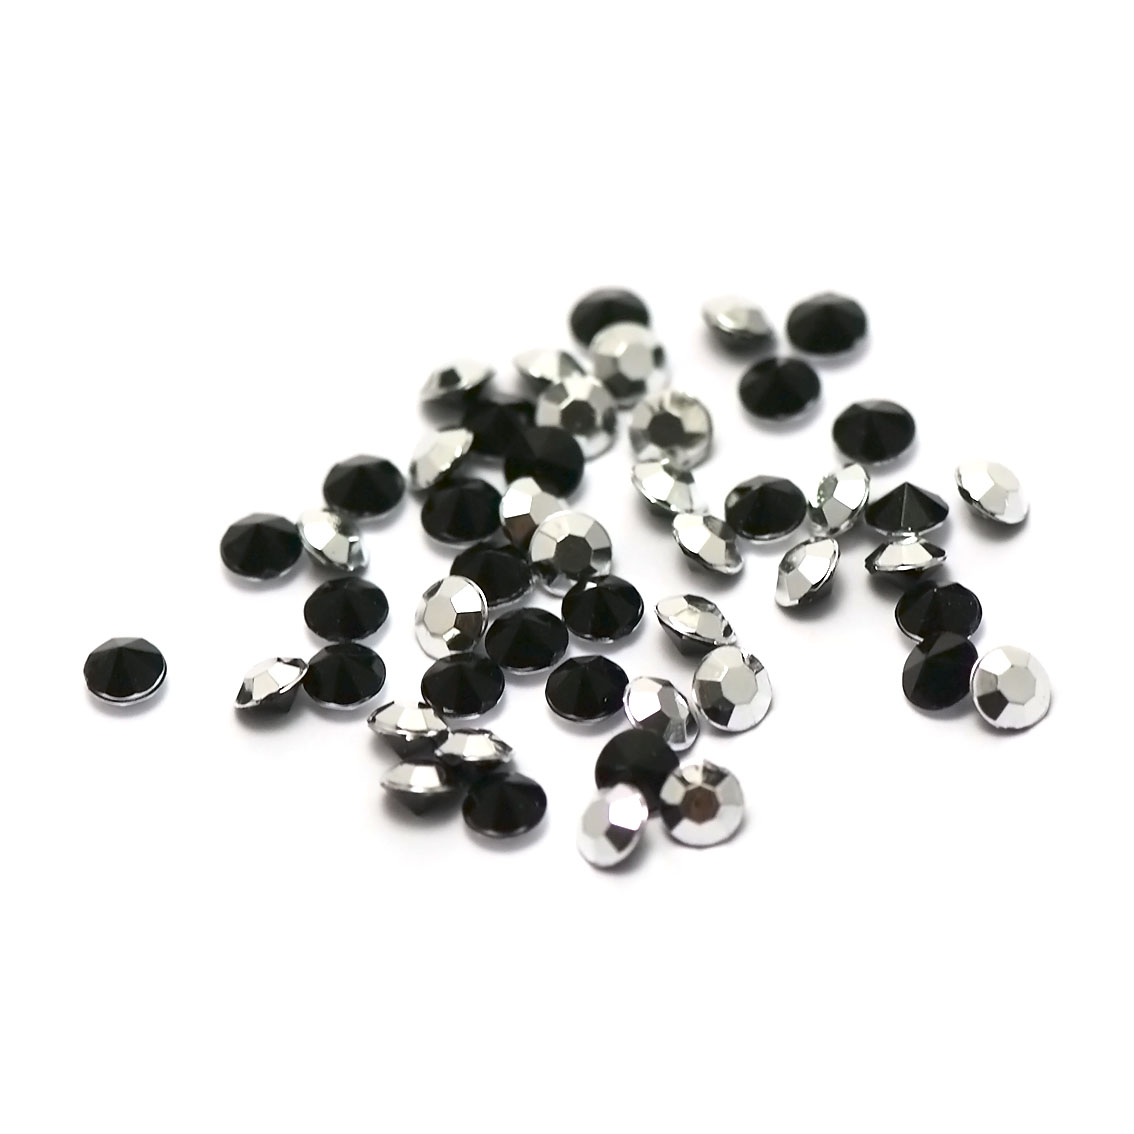 5g de perles strass en verre à coller cône 4 mm, noir